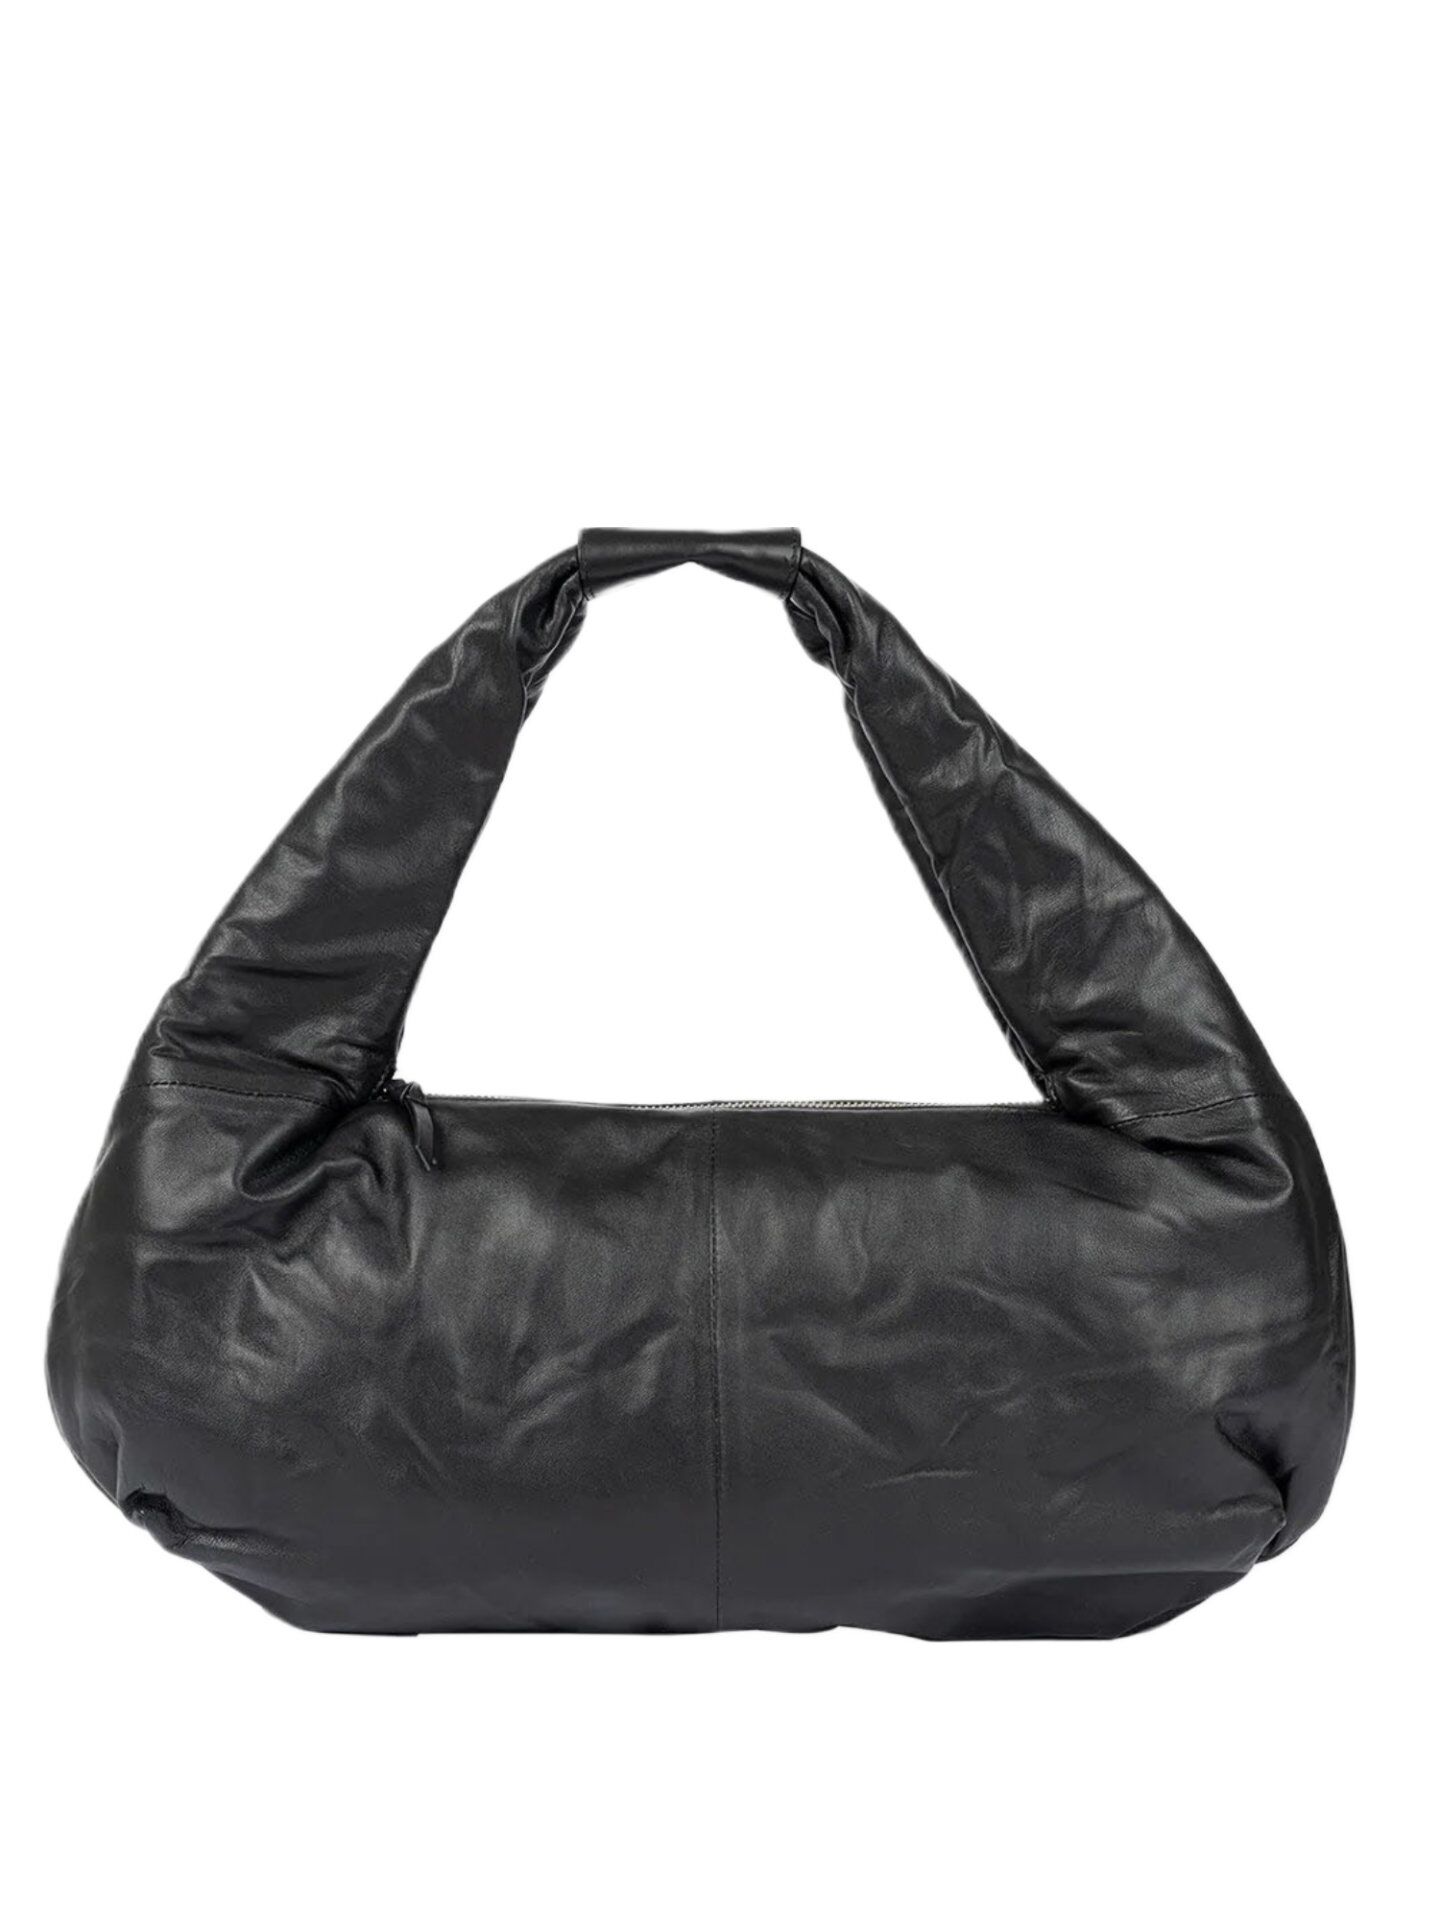 Stylism Bag Tasche Schwarz 018 (1)